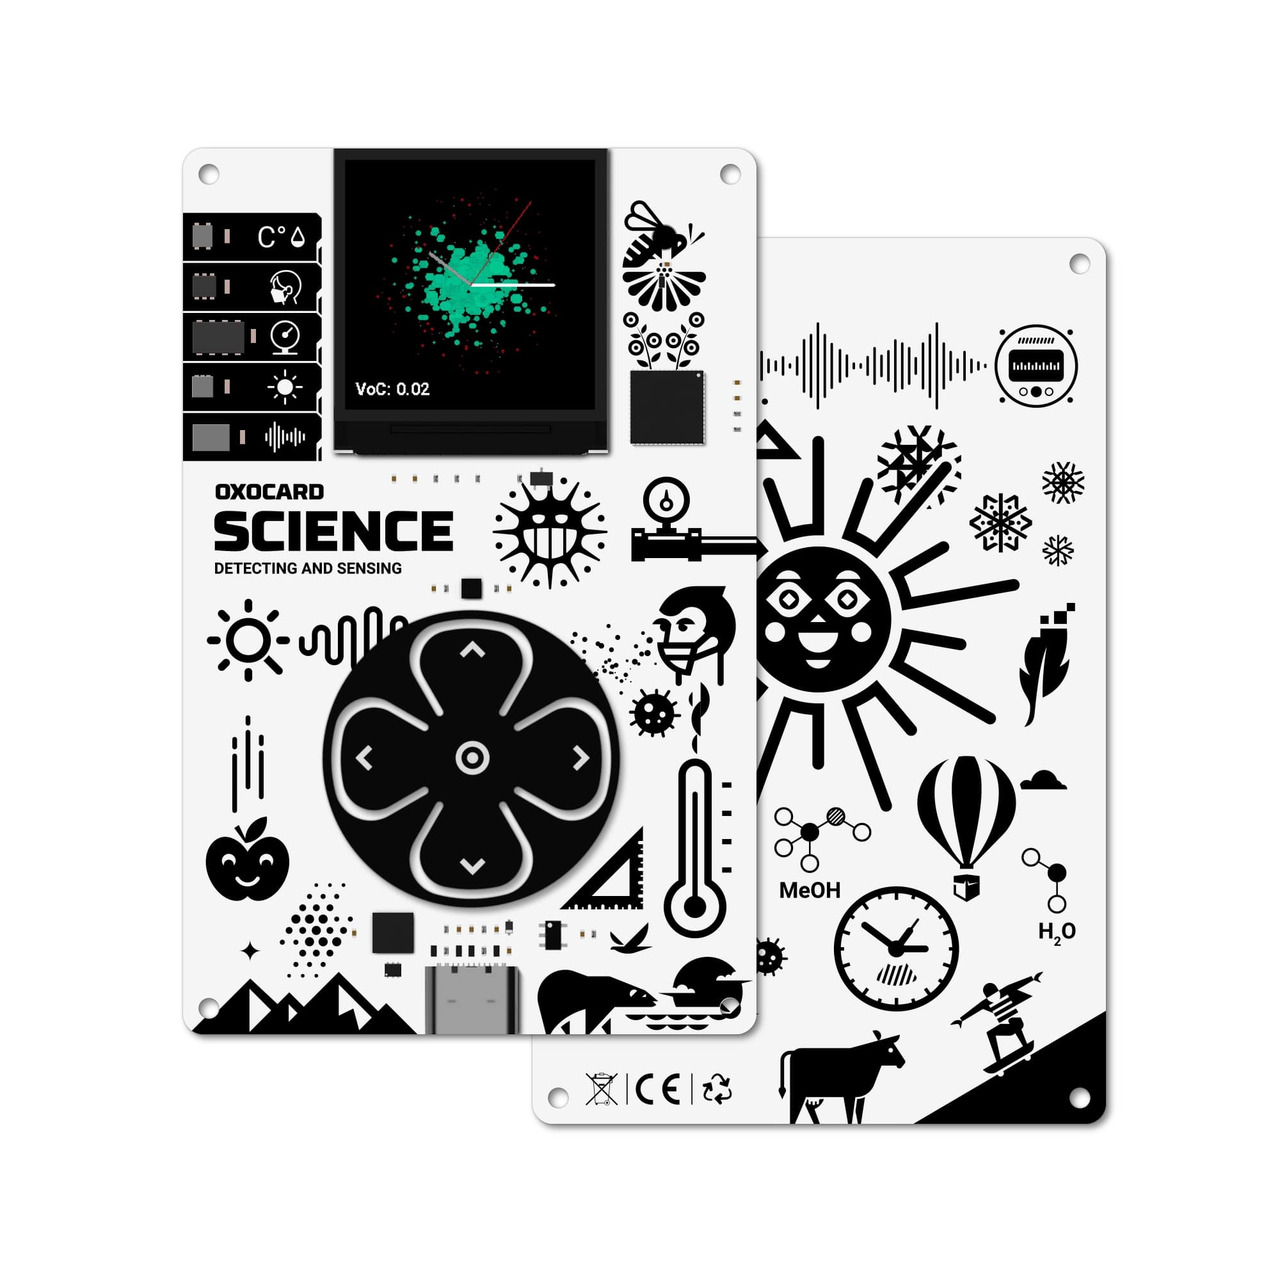 OXON Computerplatine Oxocard Science- Farbdisplay- 11 Messwerte erfassen